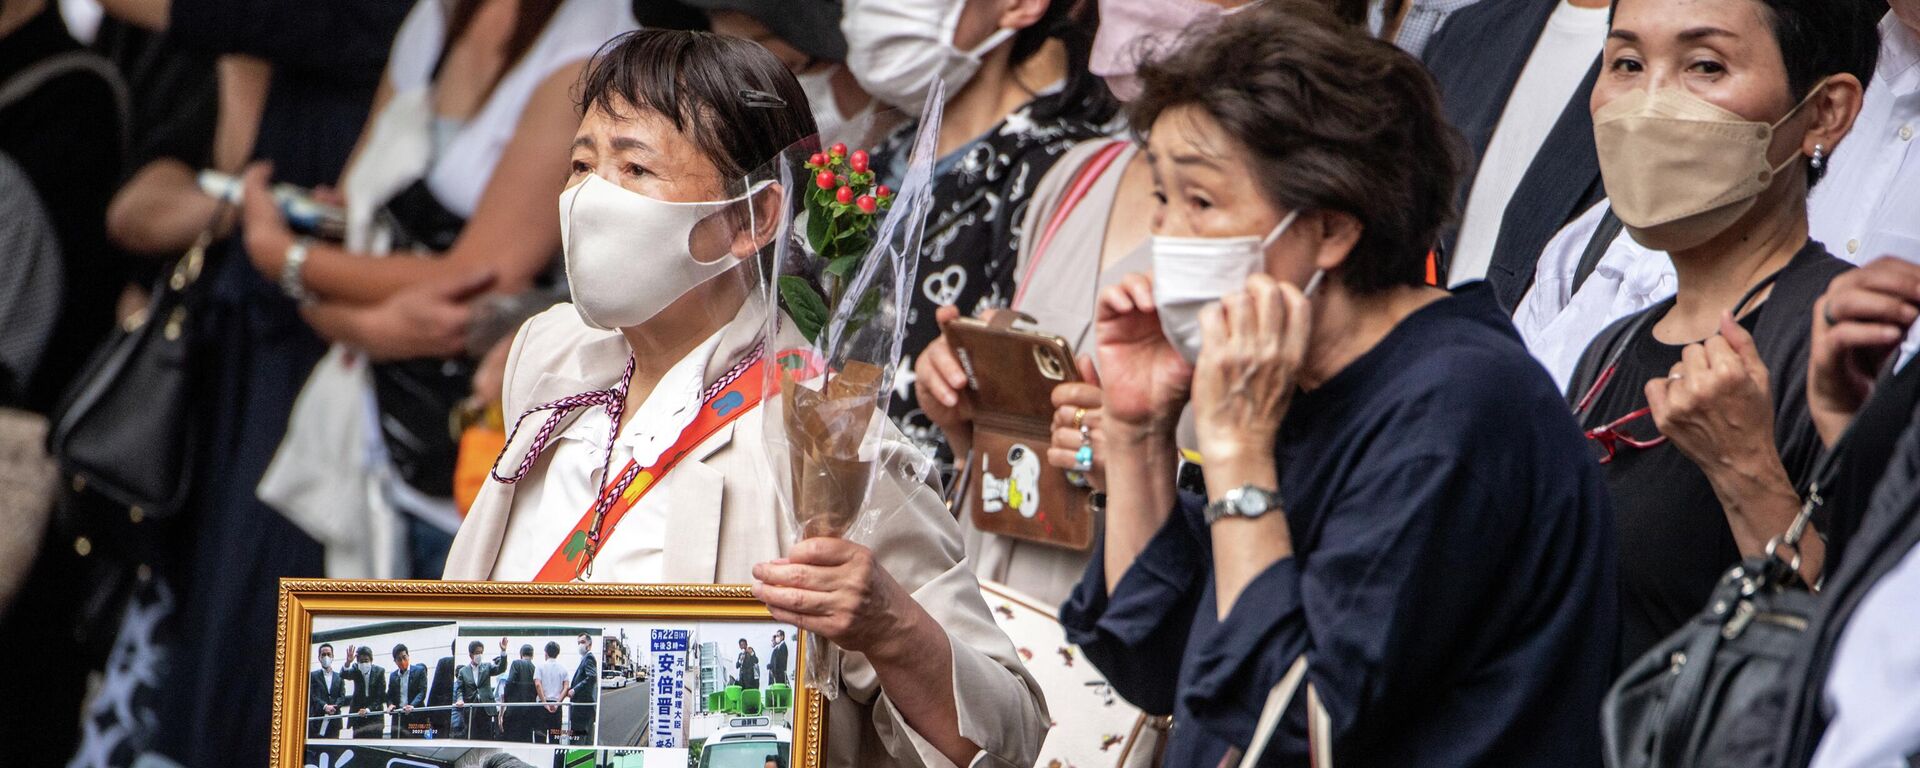 Mọi người tập trung tại xe tang khi cố Thủ tướng Nhật Bản Shinzo Abe rời chùa Jojoji ở Tokyo vào ngày 12/7/2022. - Sputnik Việt Nam, 1920, 12.07.2022